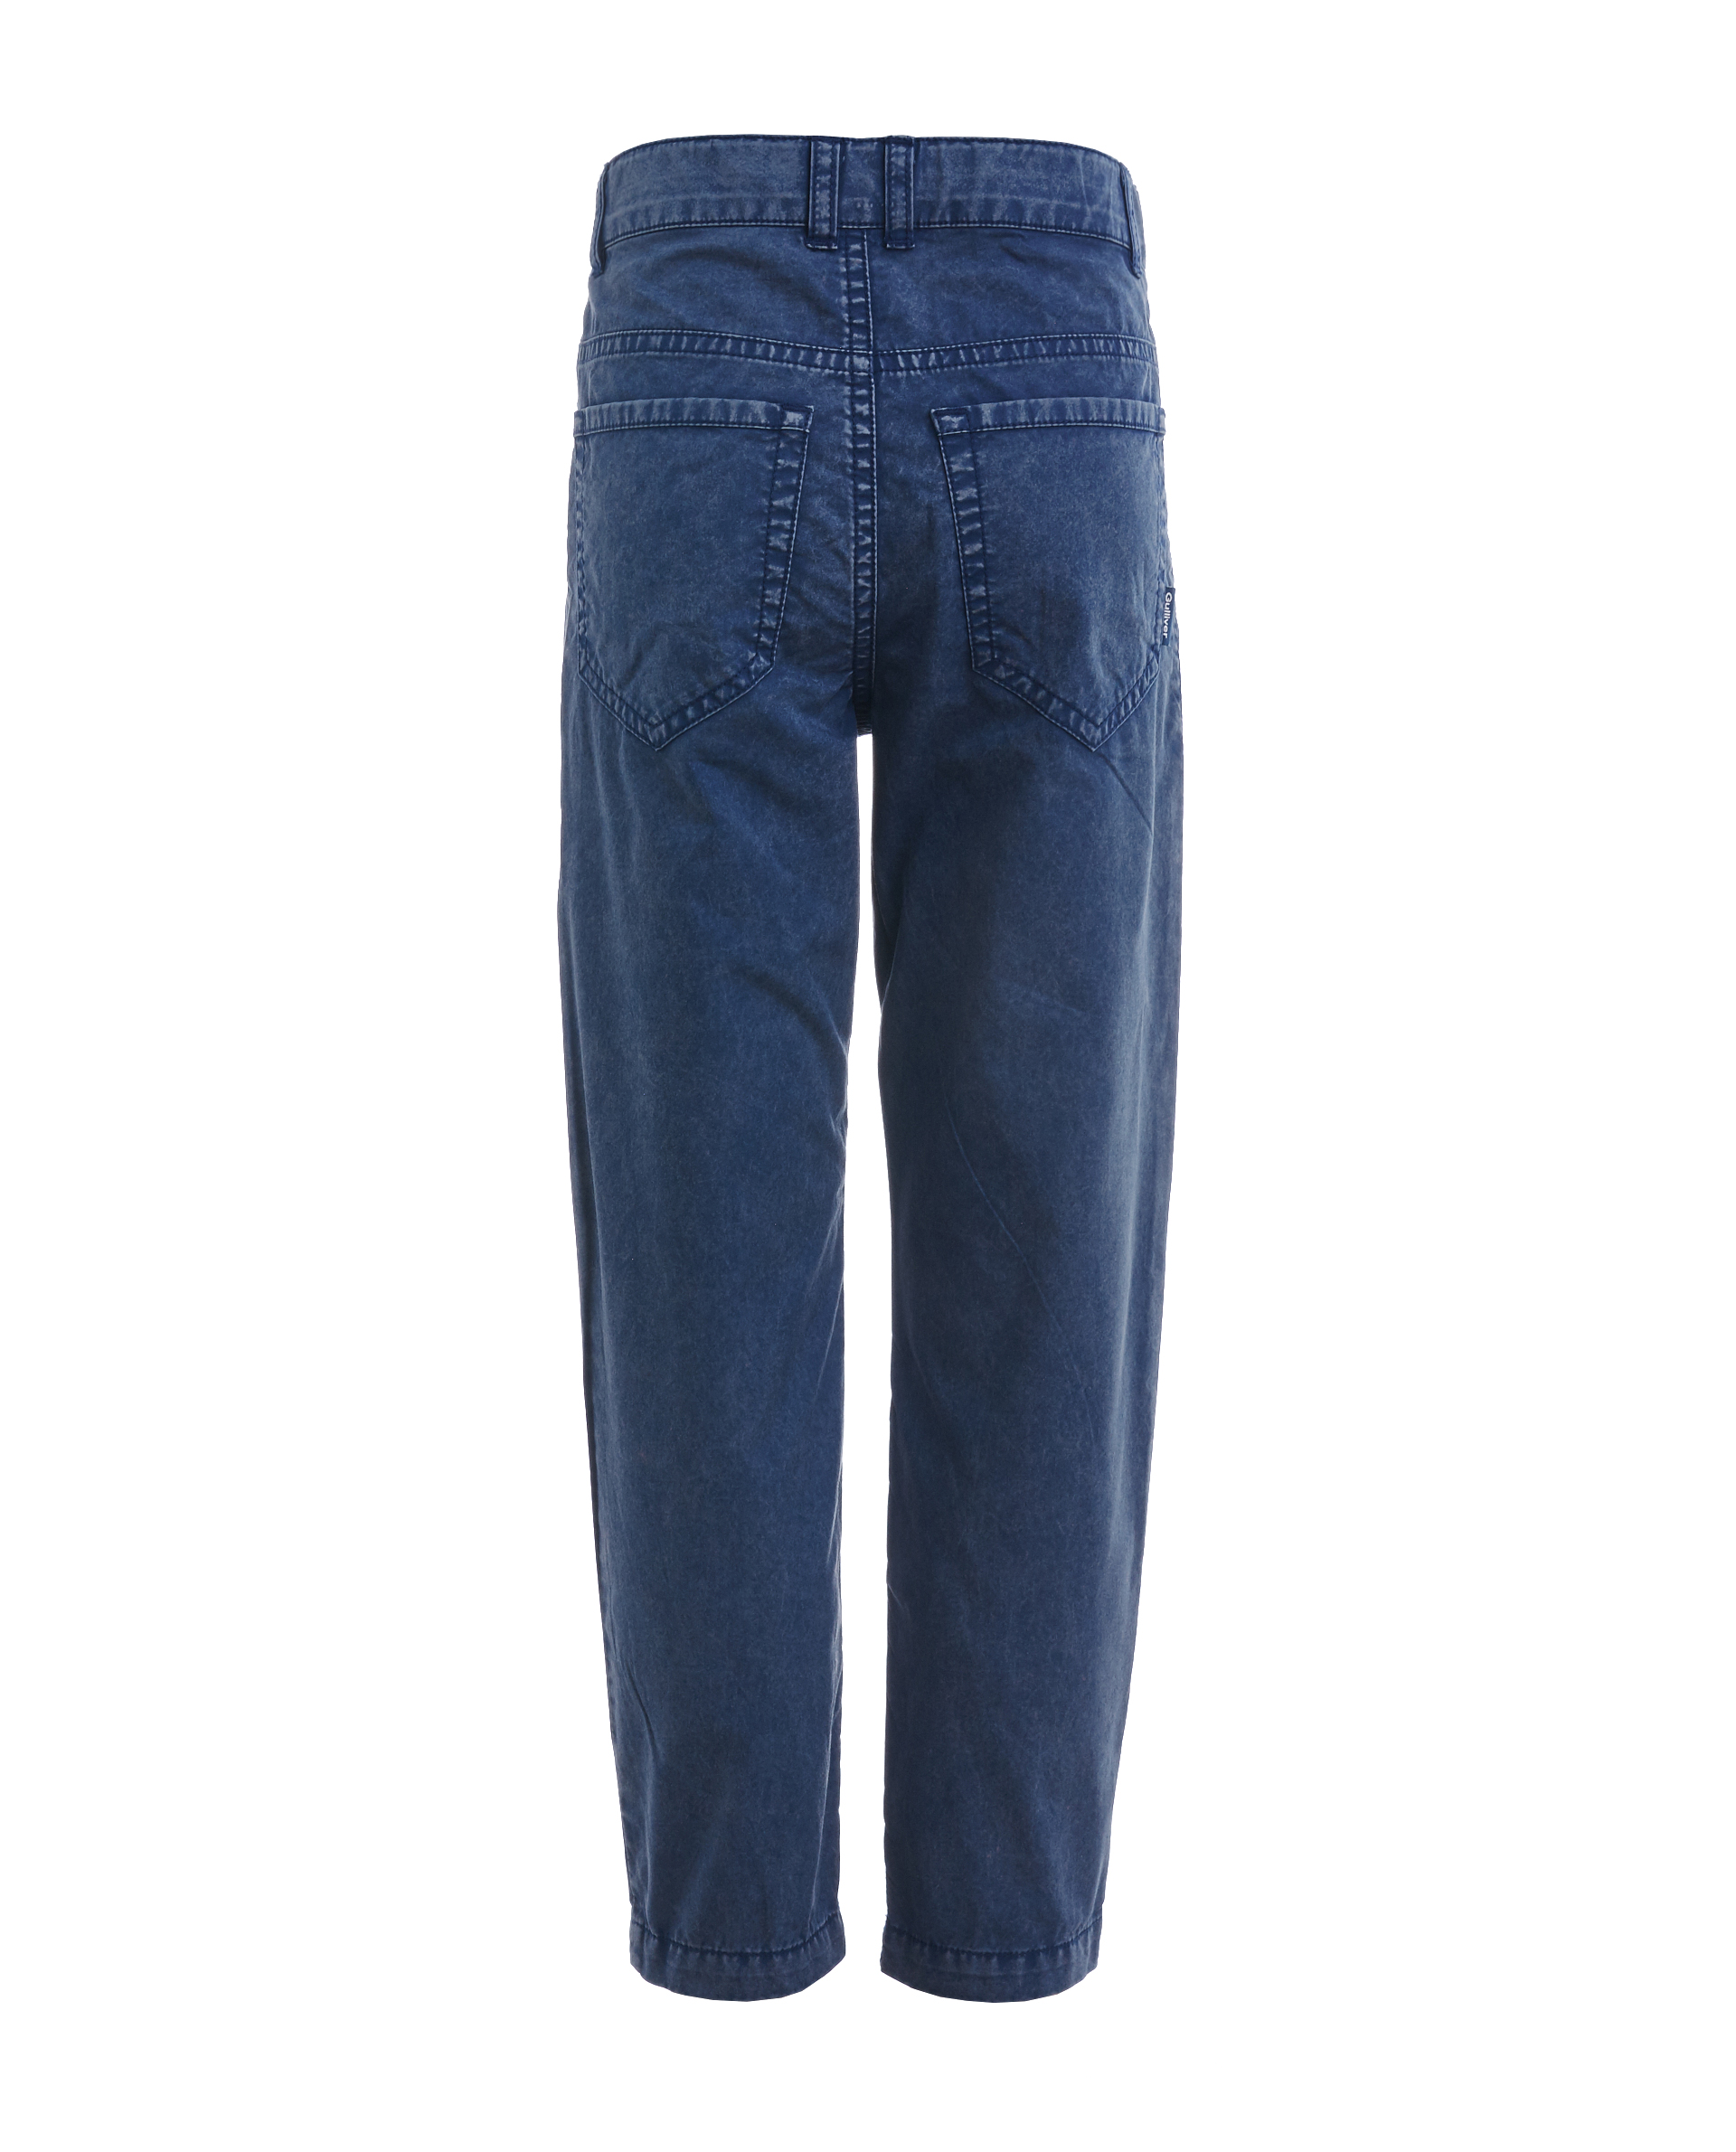 Синие брюки с винтажным эффектом Gulliver 11906BMC6305, размер 110, цвет синий - фото 2